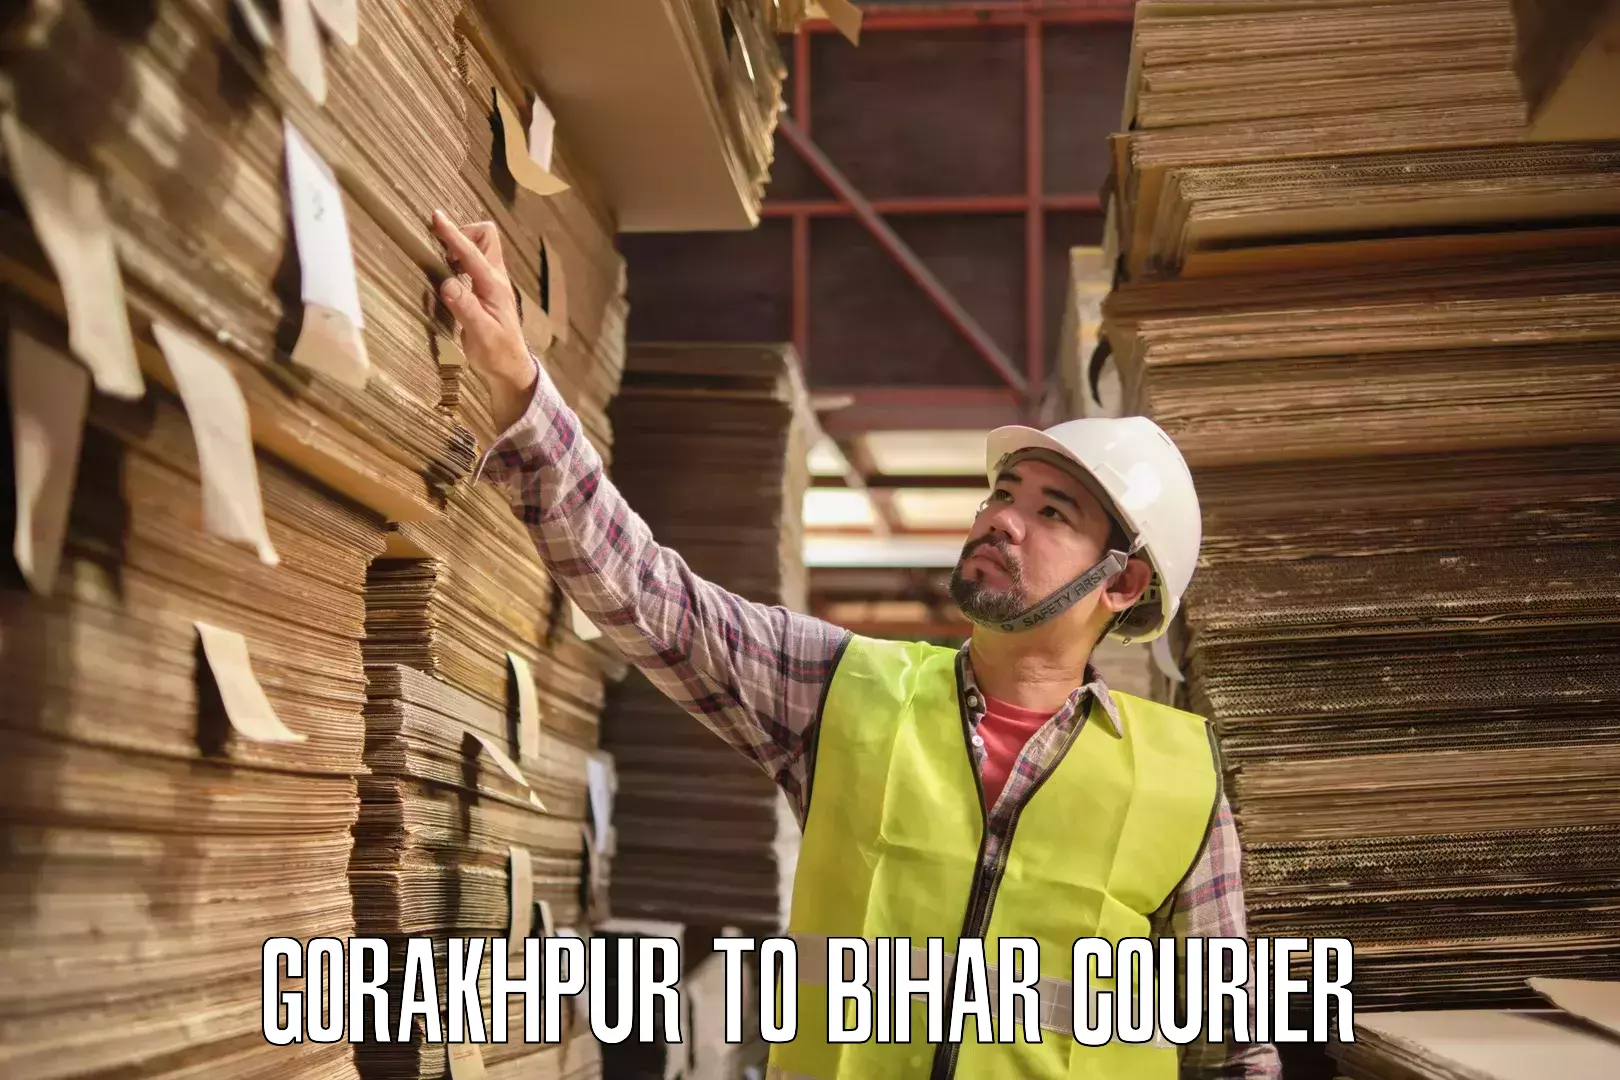 Efficient cargo services Gorakhpur to Danapur